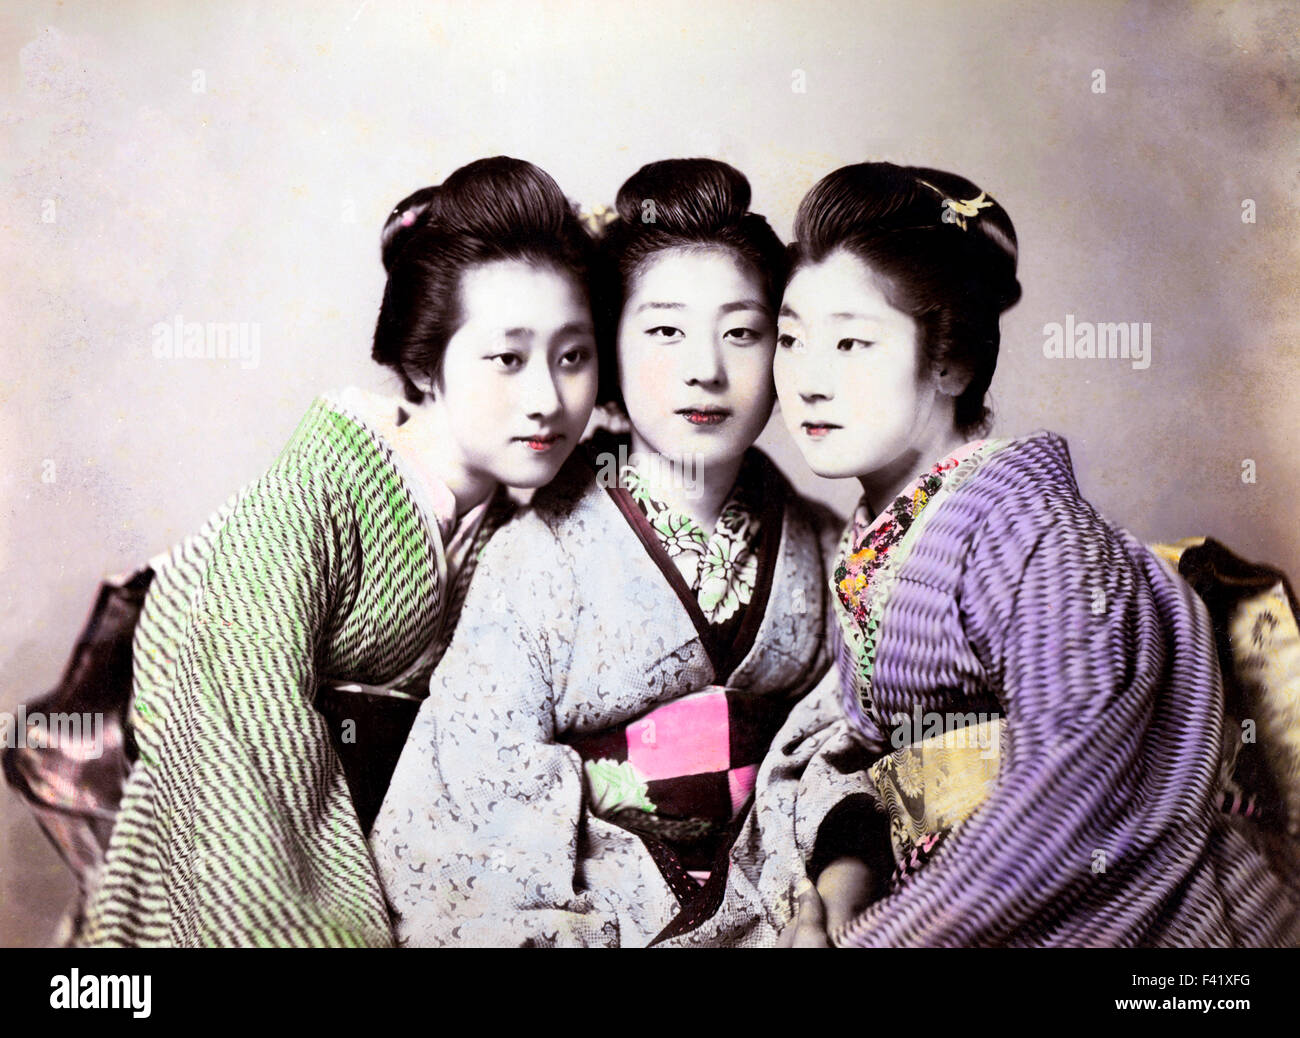 Three geishas, Japan Stock Photo